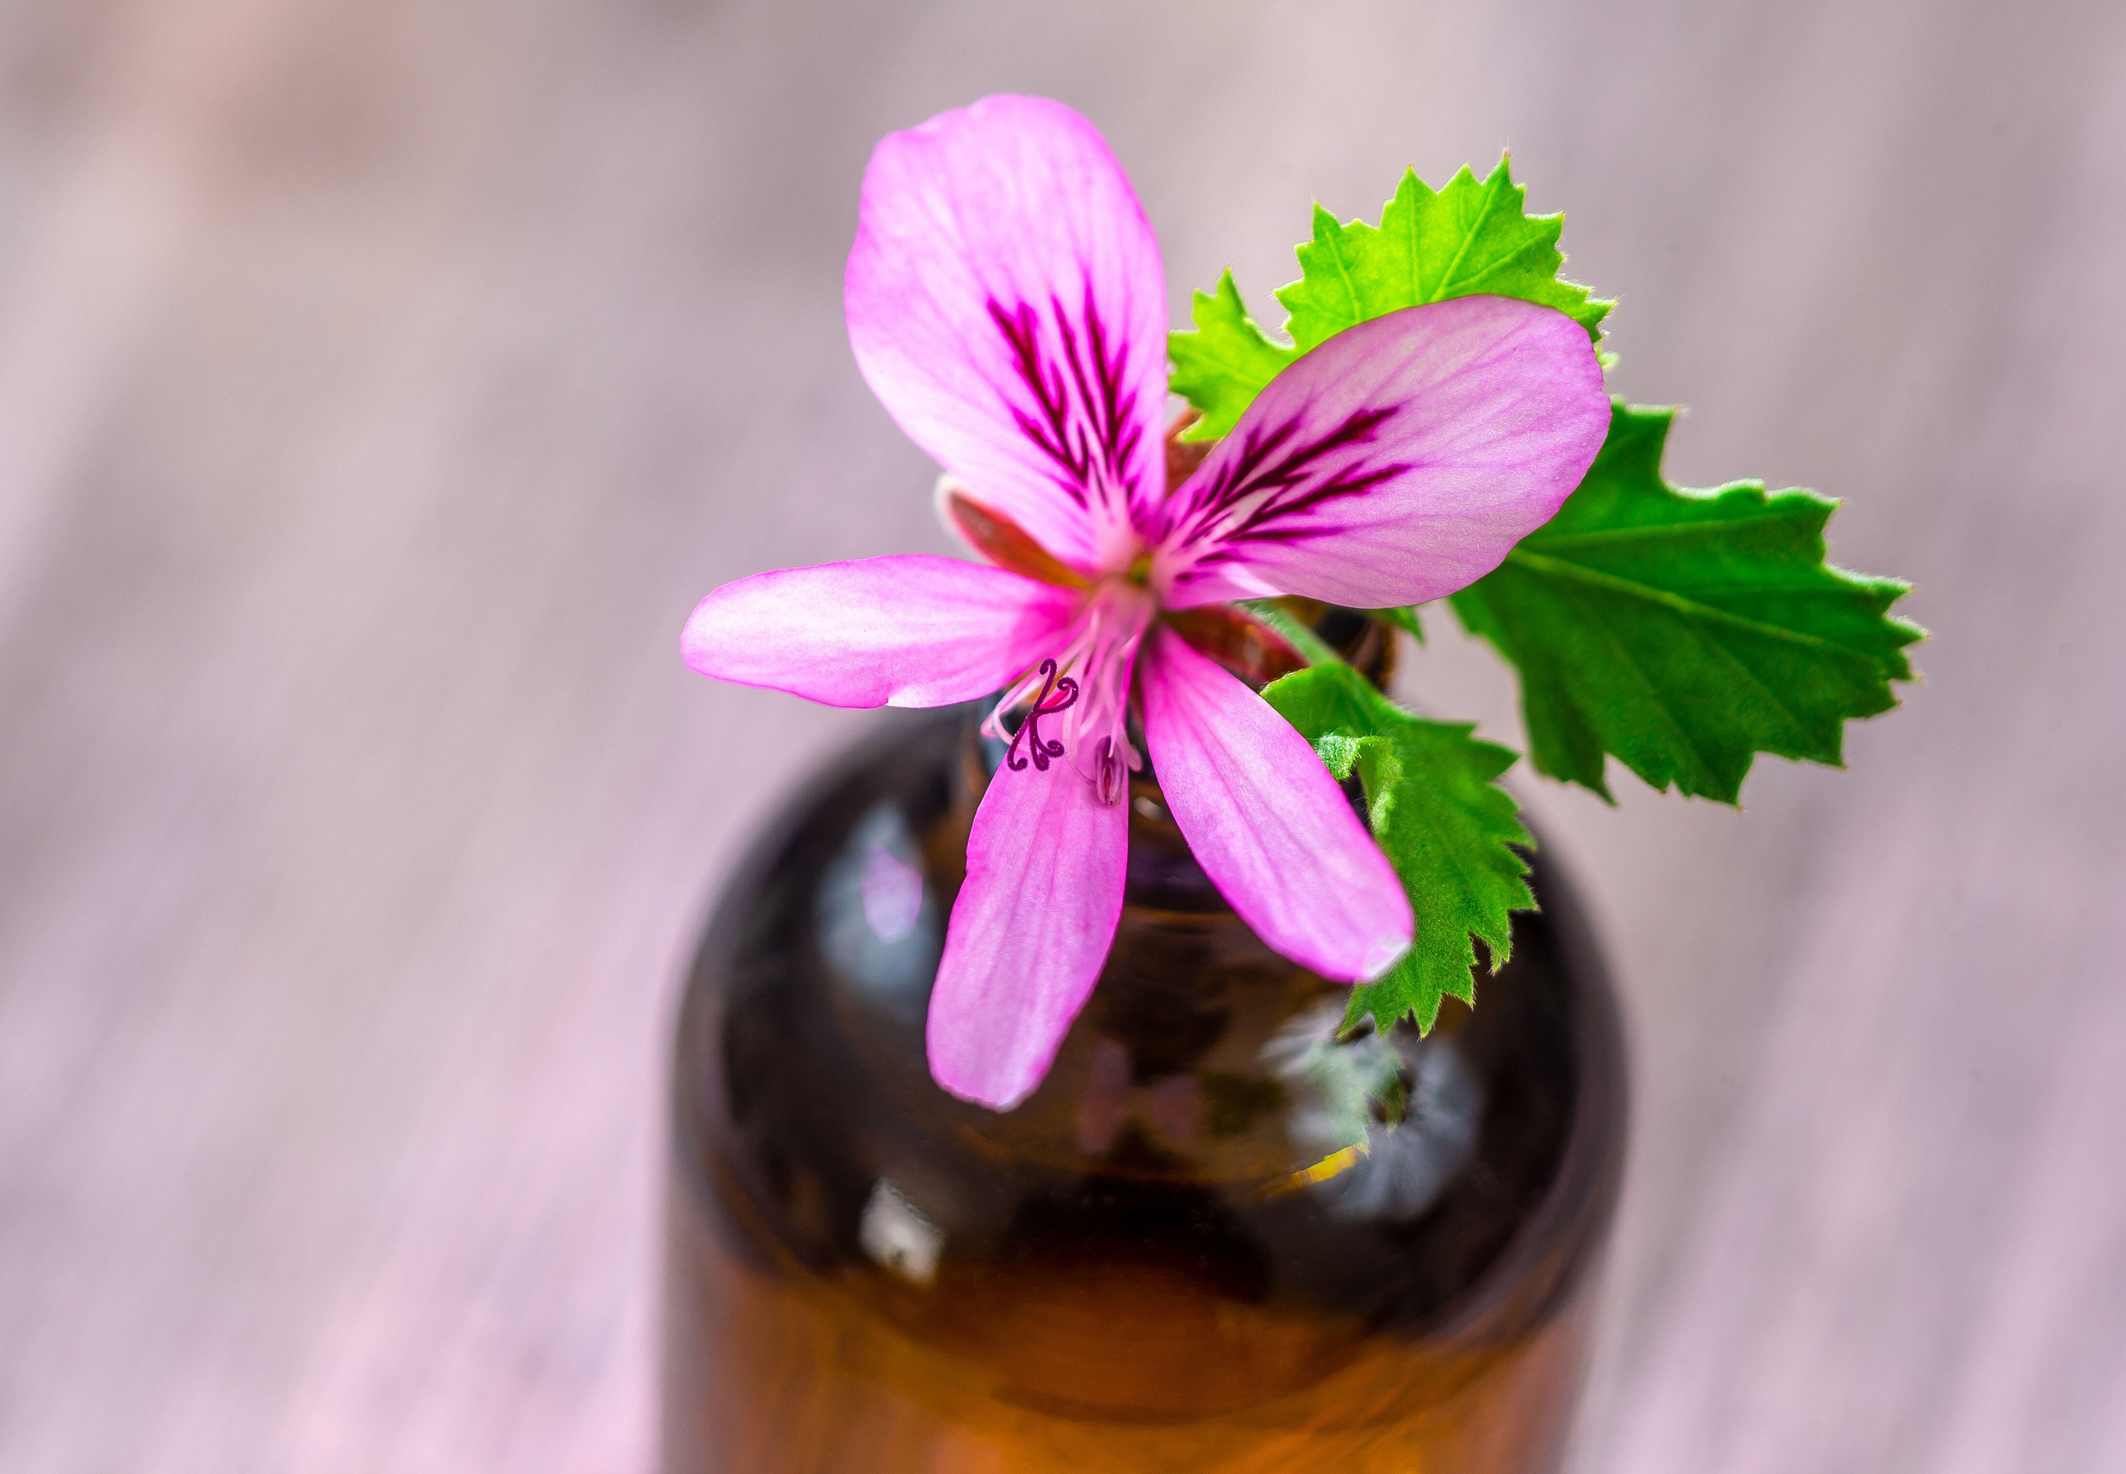 Geranium essential oil (pelargonium)